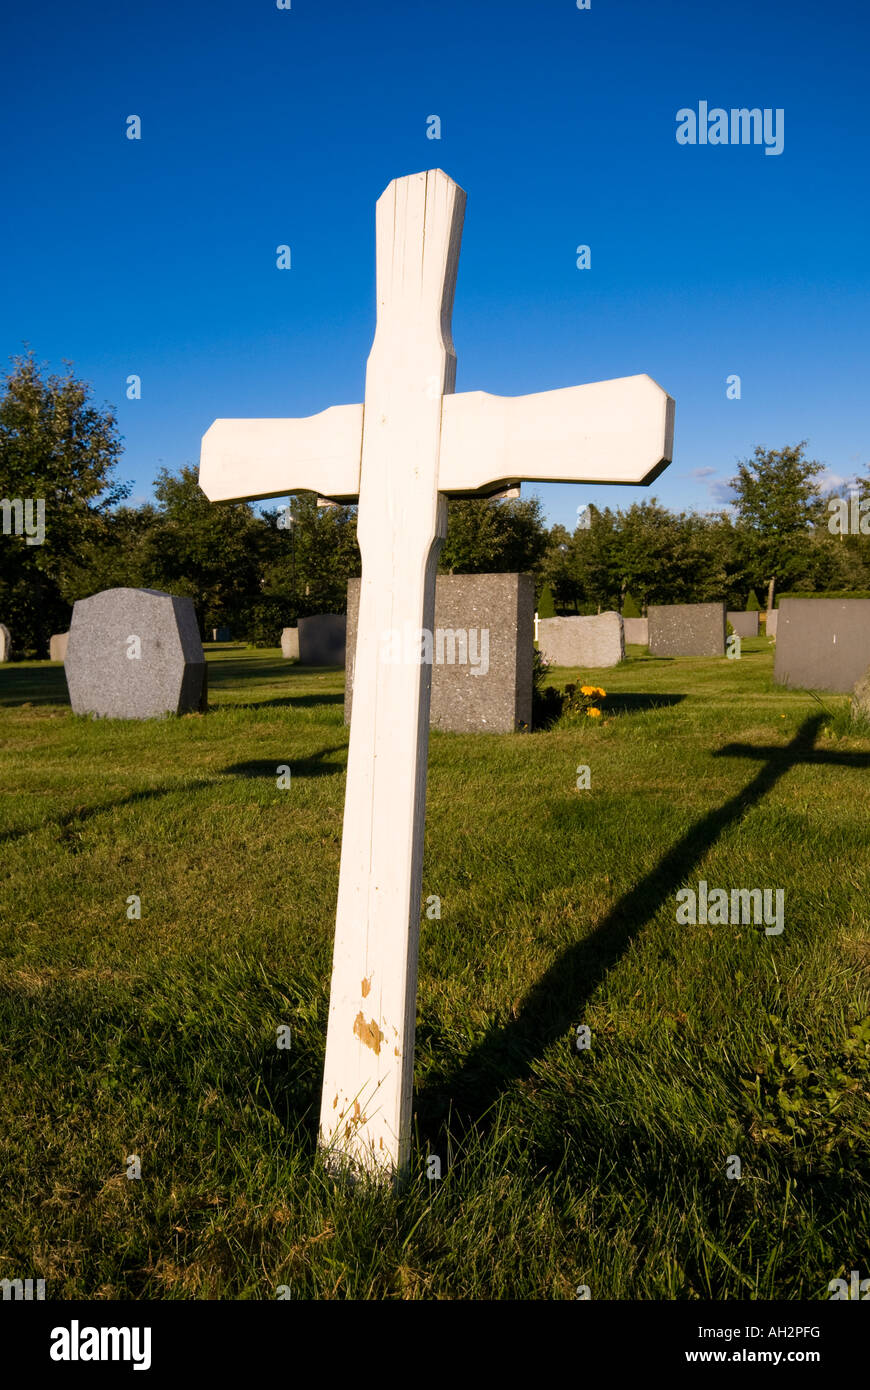 Cruz de madera blanca en el cementerio dando larga sombra negra Foto de stock